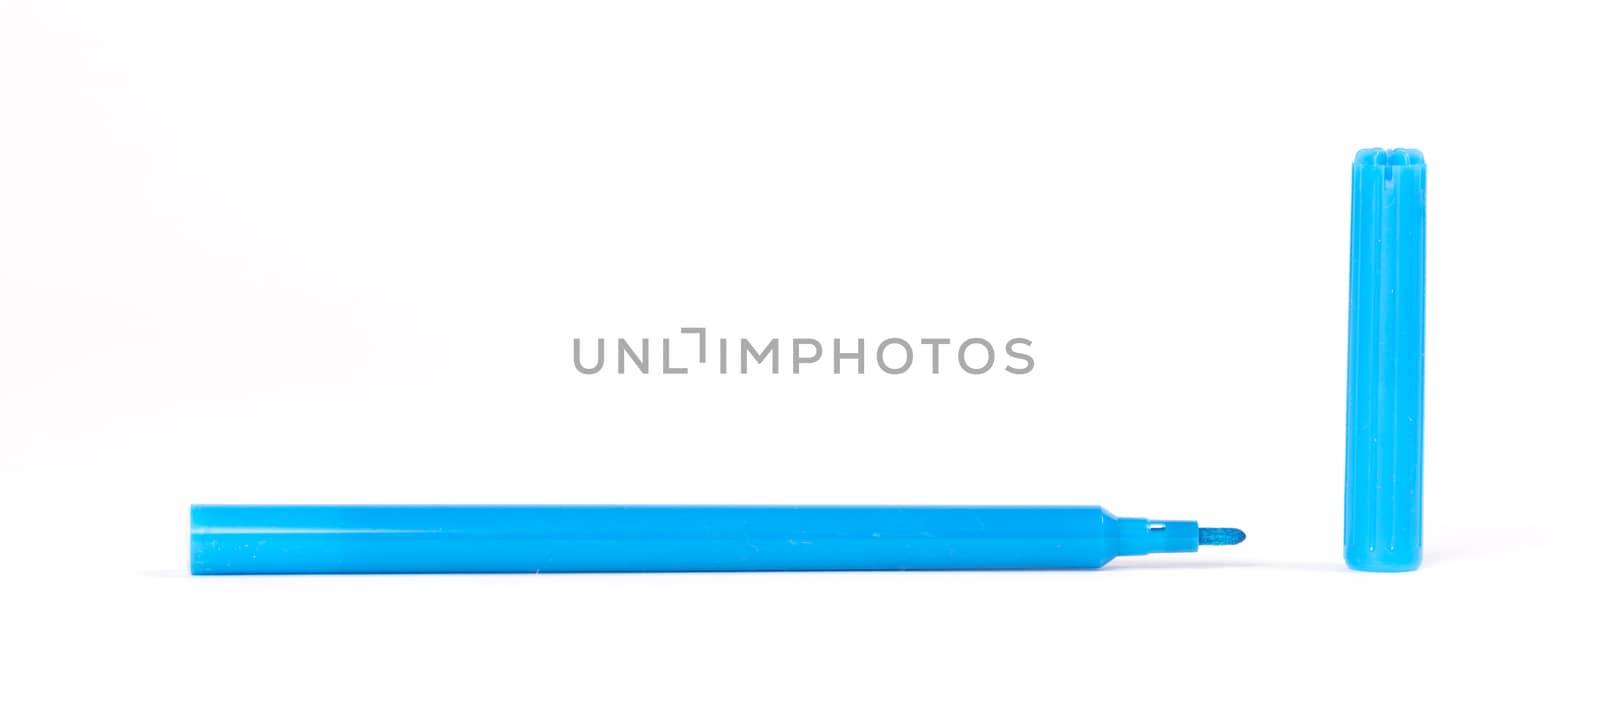 Blue felt-tip pen isolated on white background